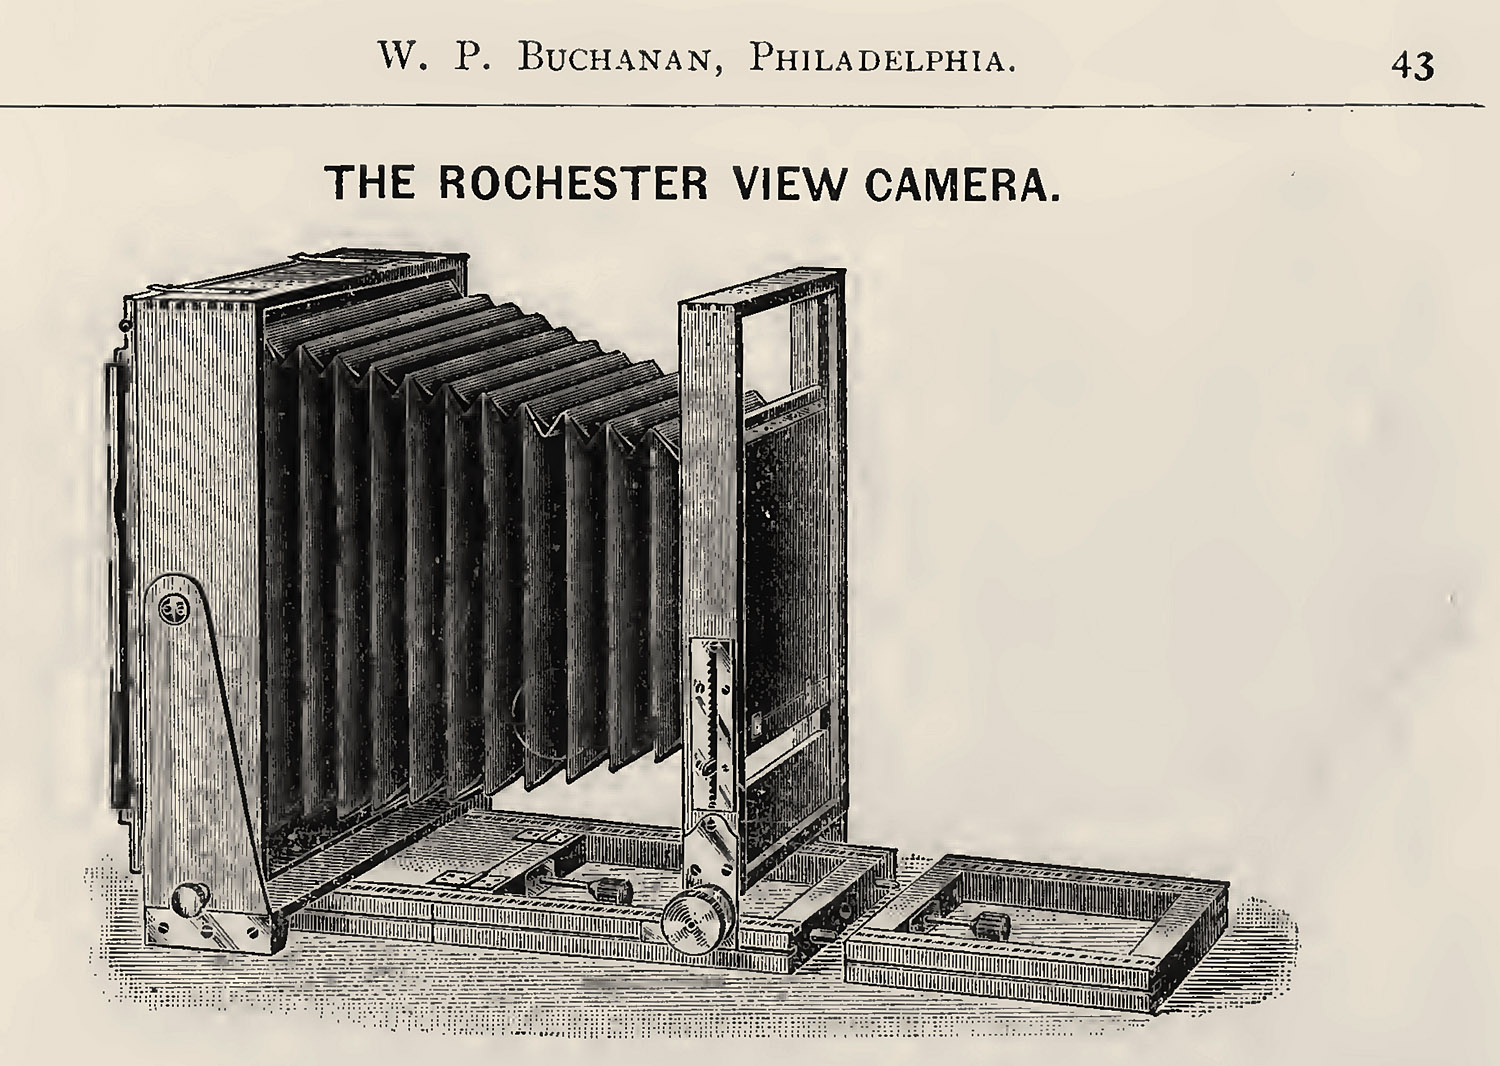 1893-w.p.buchannan,philadelphia.catalog-43-ak-sar-ben.or.roch.view-1500.jpg